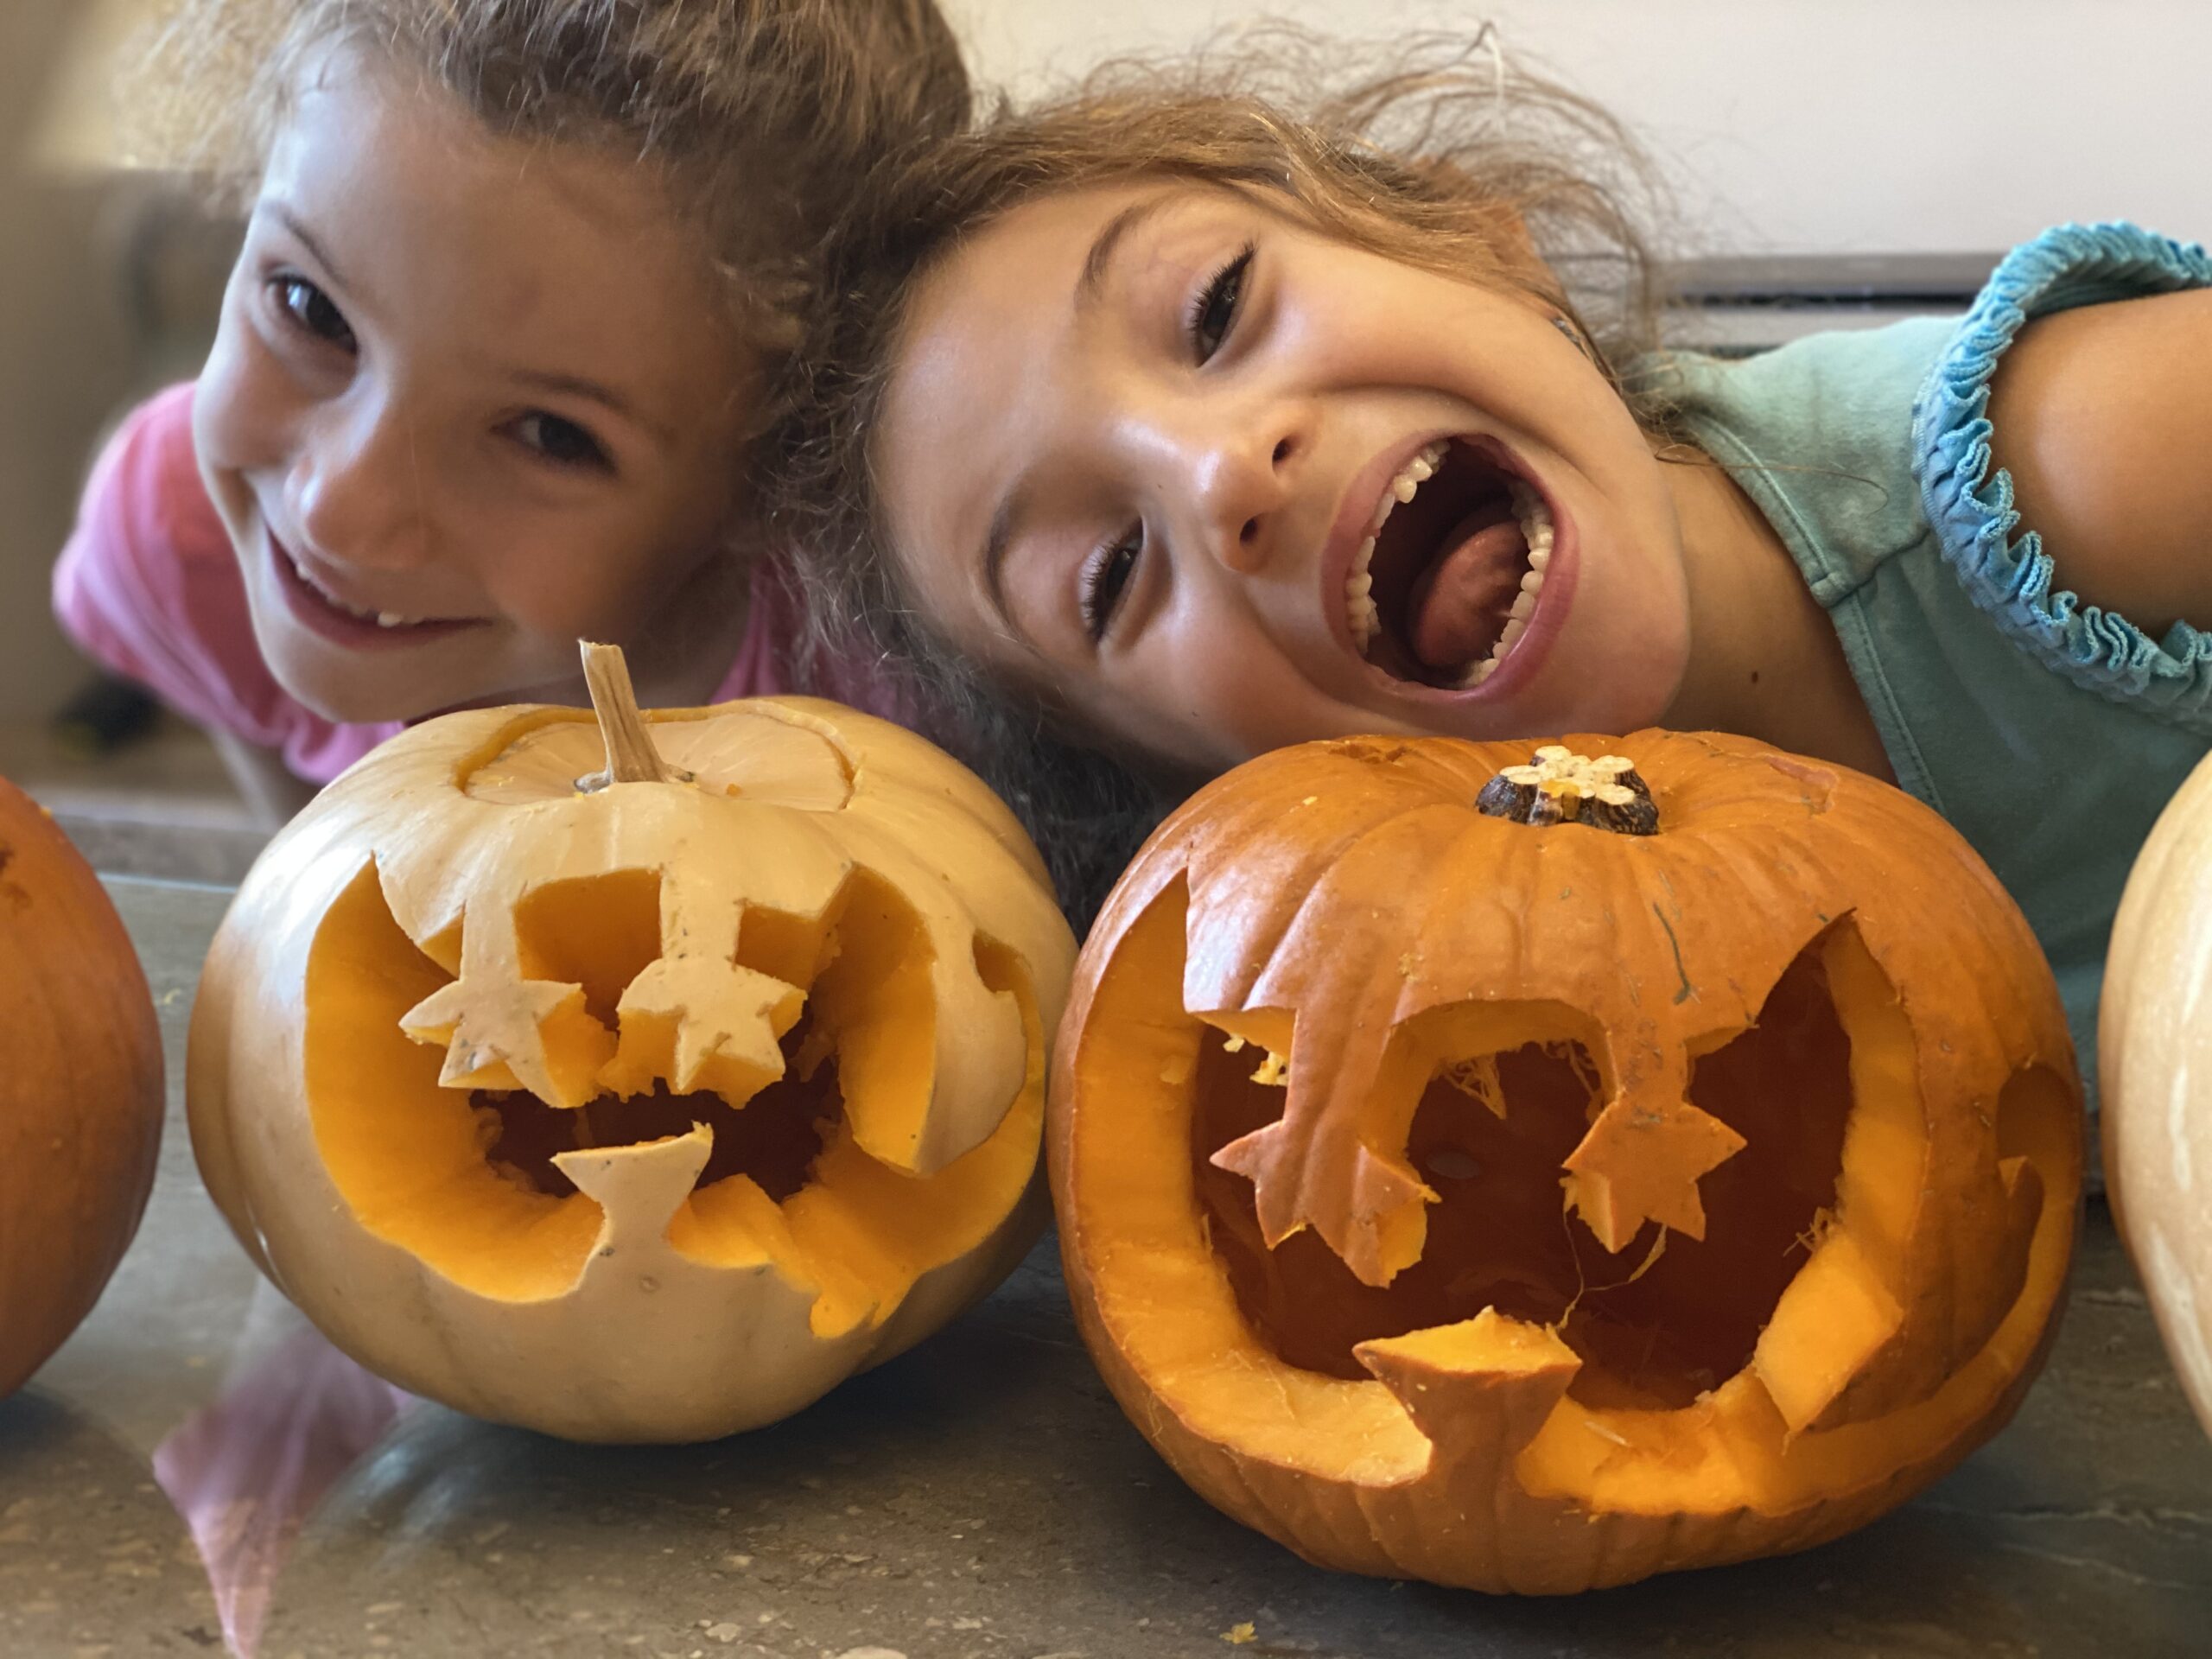 Merkitty carved pumpkins